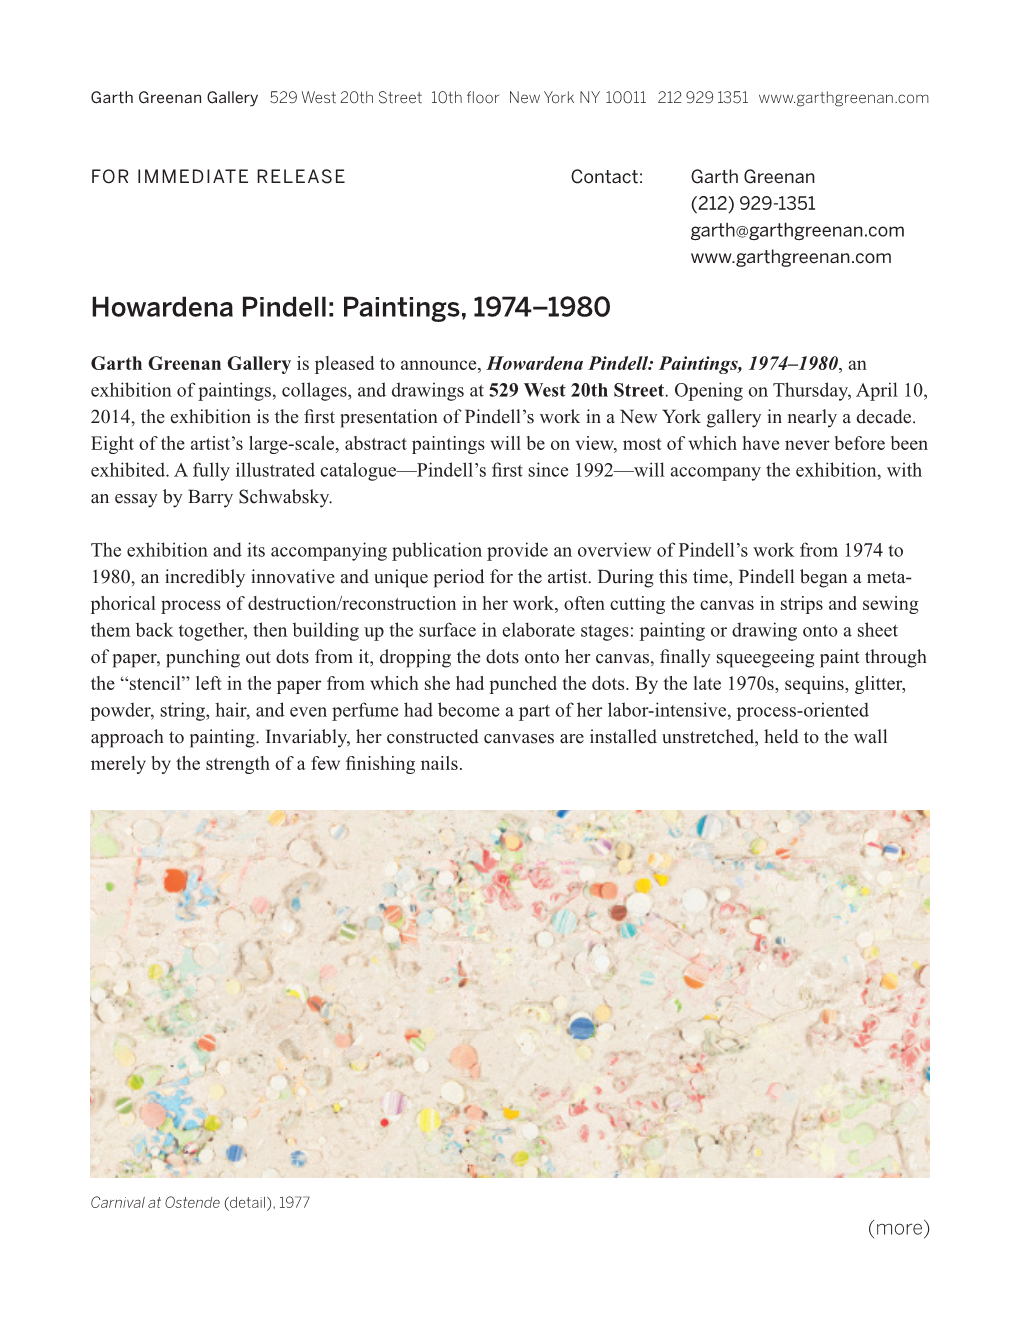 Howardena Pindell: Paintings, 1974–1980